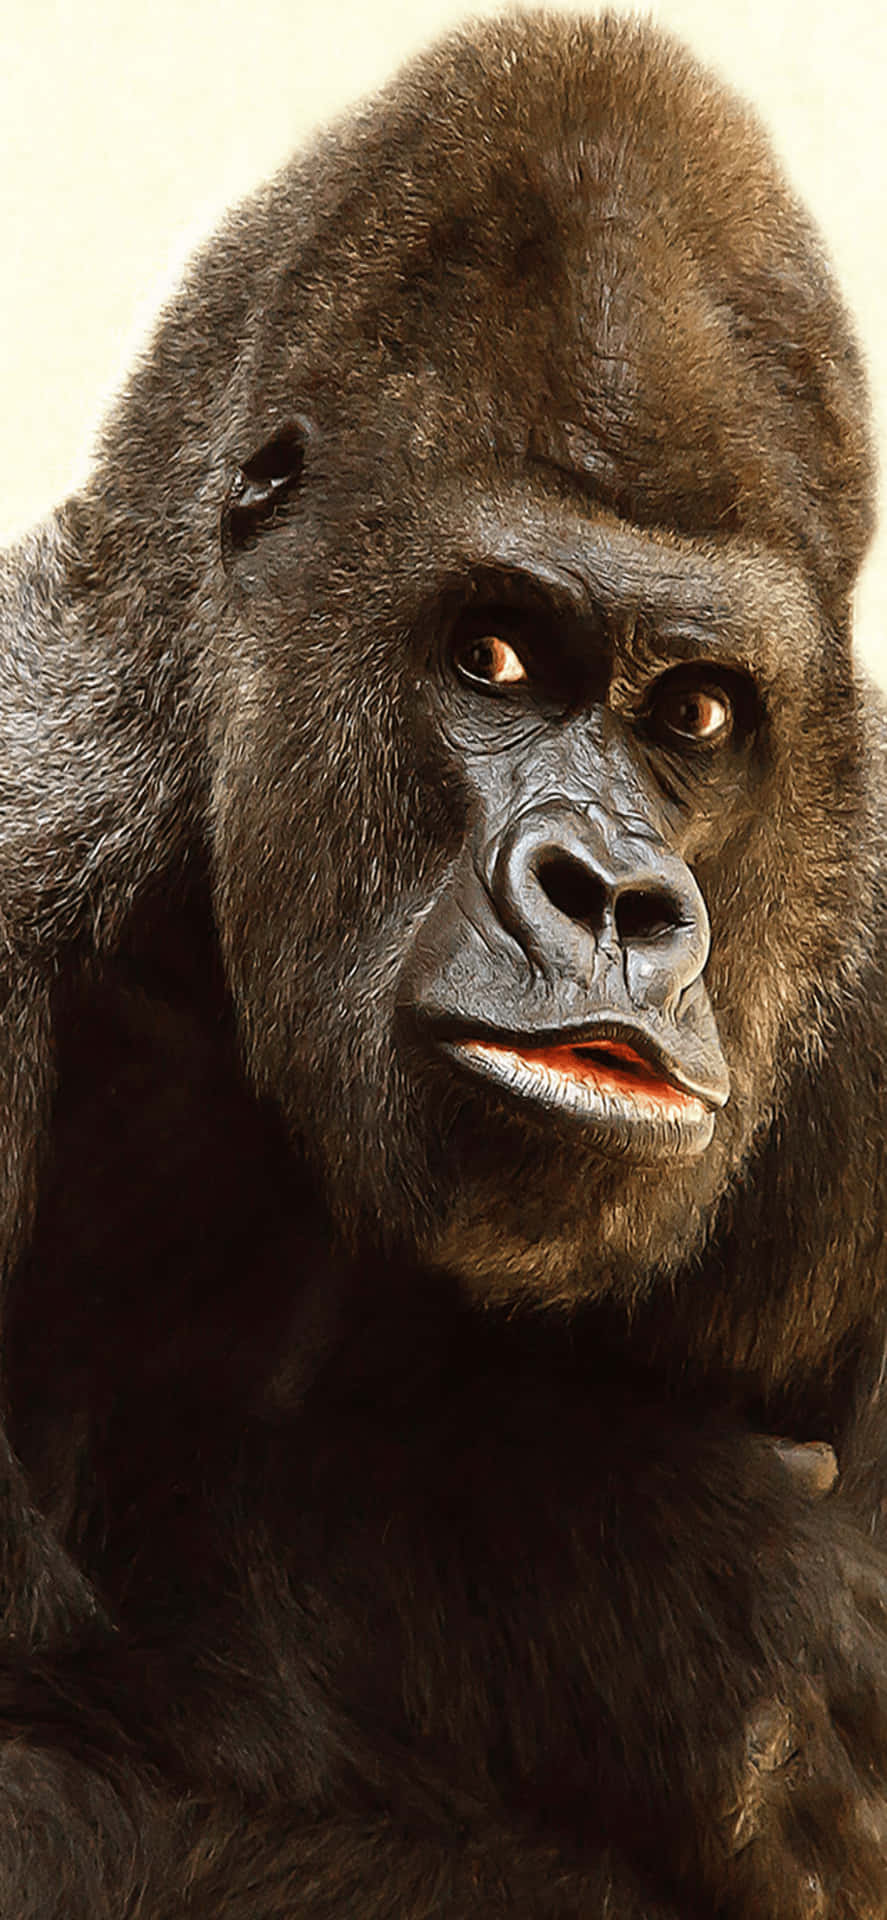 Faisfoggio Con L'iconico Gorilla Dell'iphone X